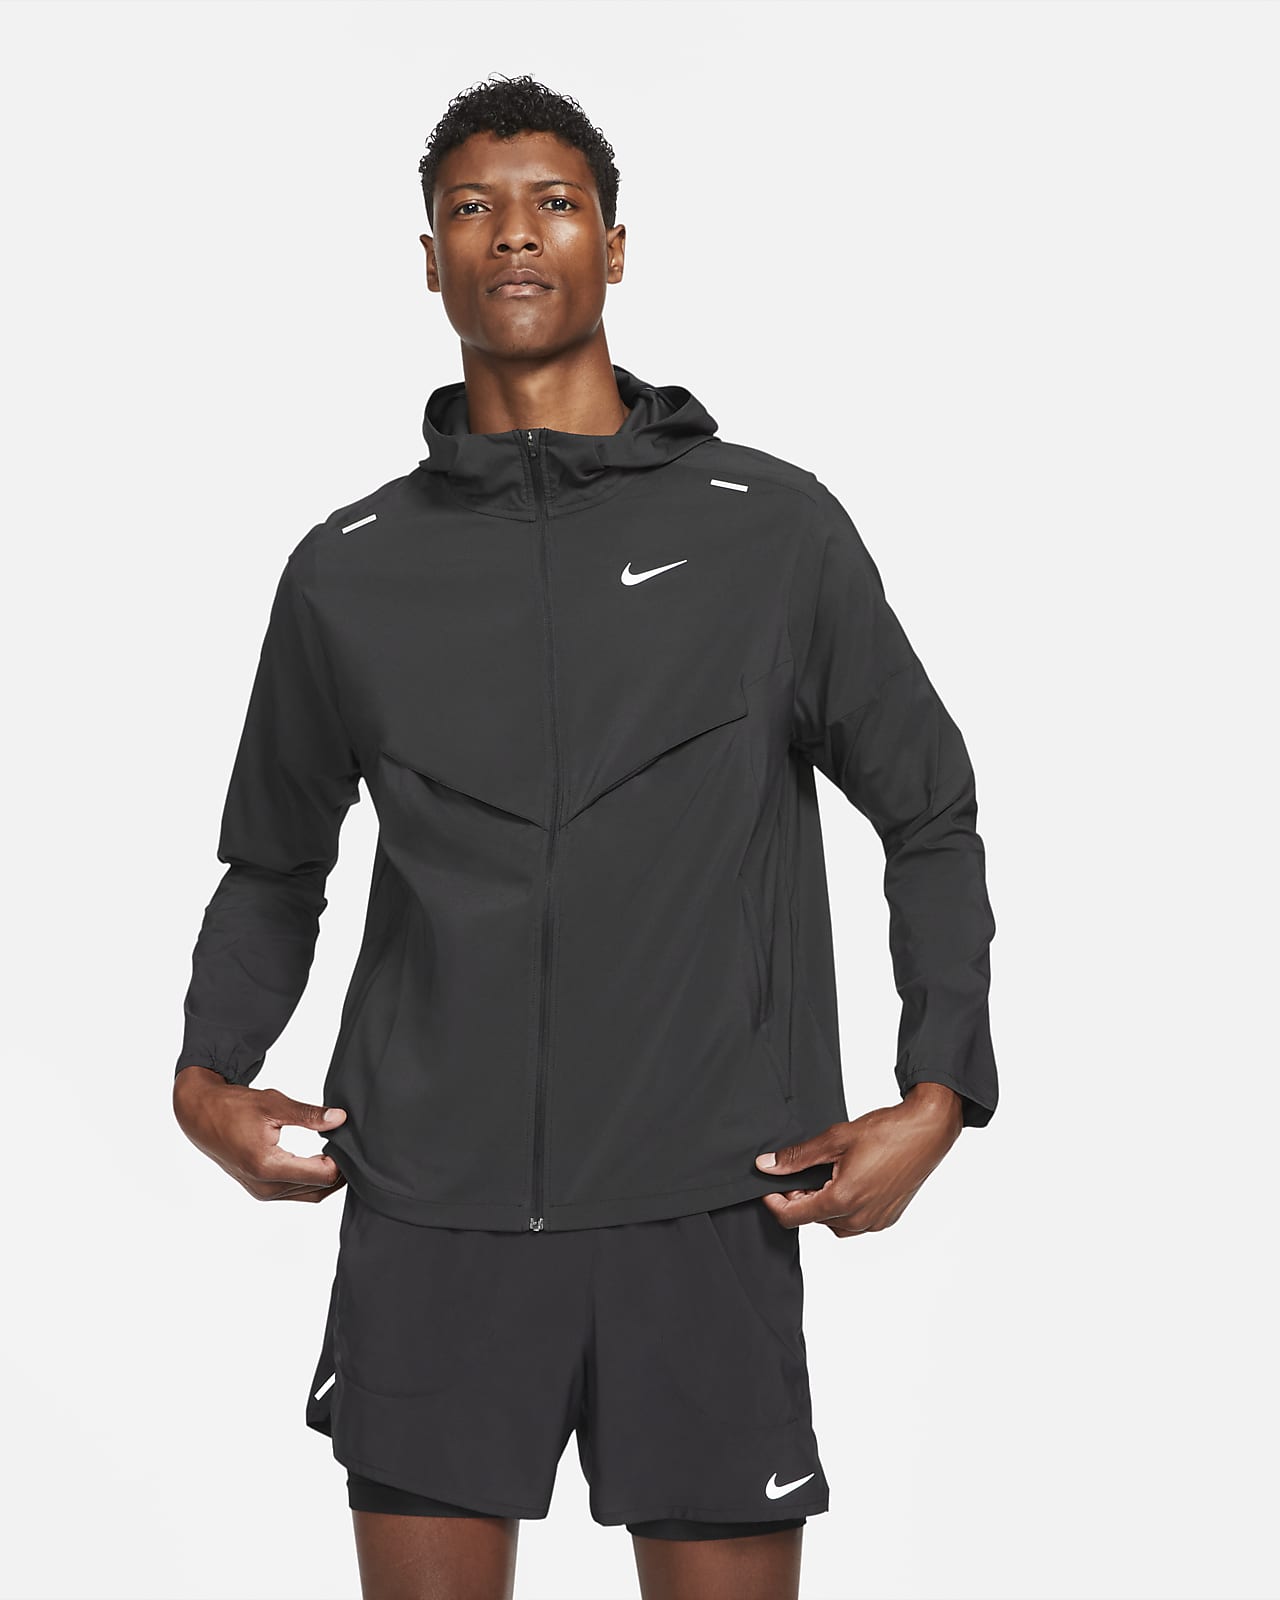 Men's Jacket. Nike UK